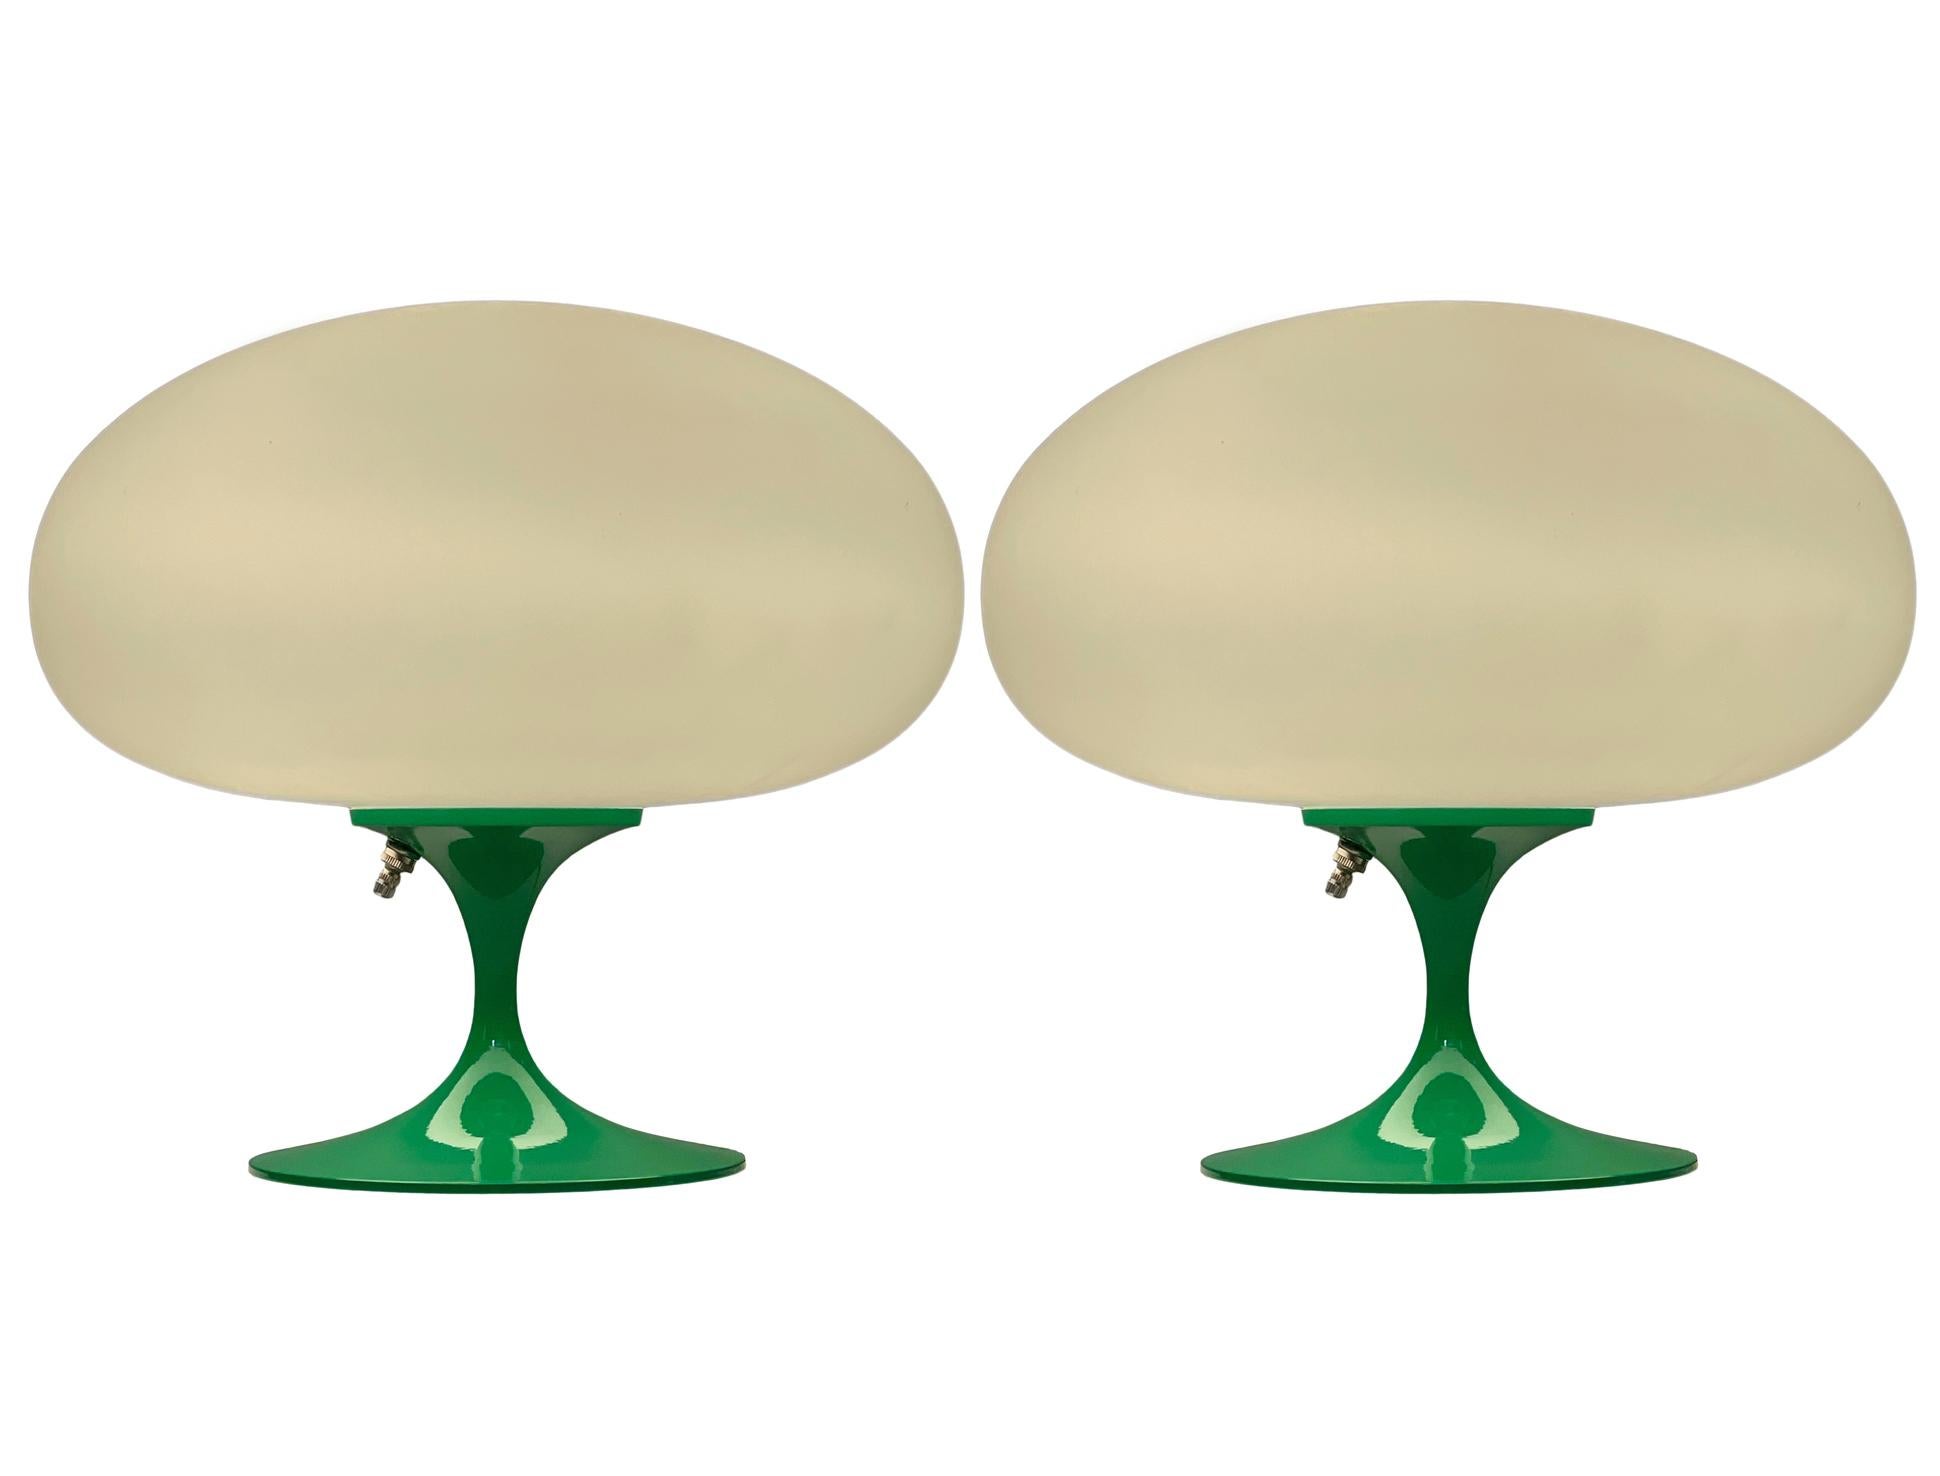 Une magnifique paire de lampes de table en forme de tulipe de Laurel Lamp Company. Ces lampes sont dotées d'une base en aluminium coulé avec un revêtement en poudre vert et d'un abat-jour en verre blanc dépoli soufflé à la bouche. Le prix comprend